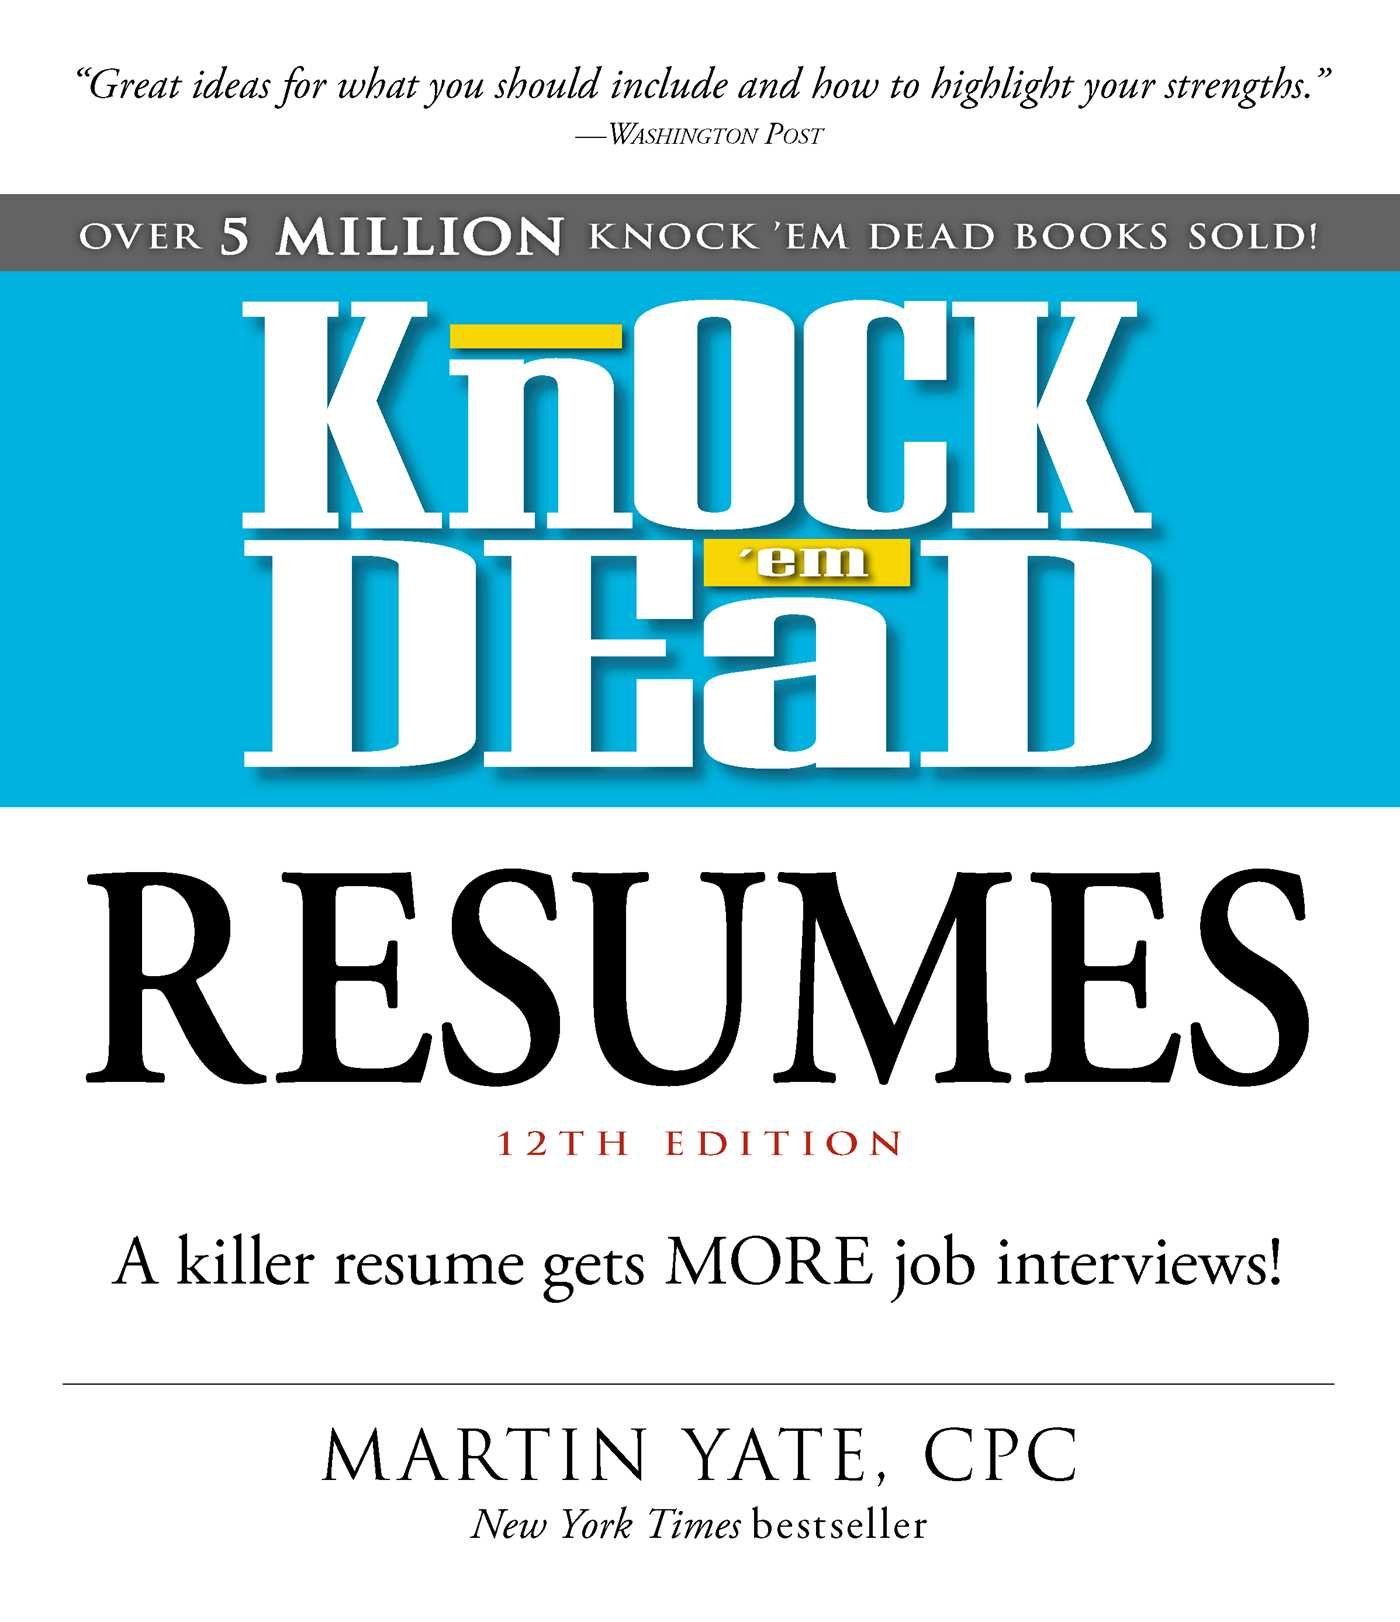 Image for "Knock 'em Dead Resumes"